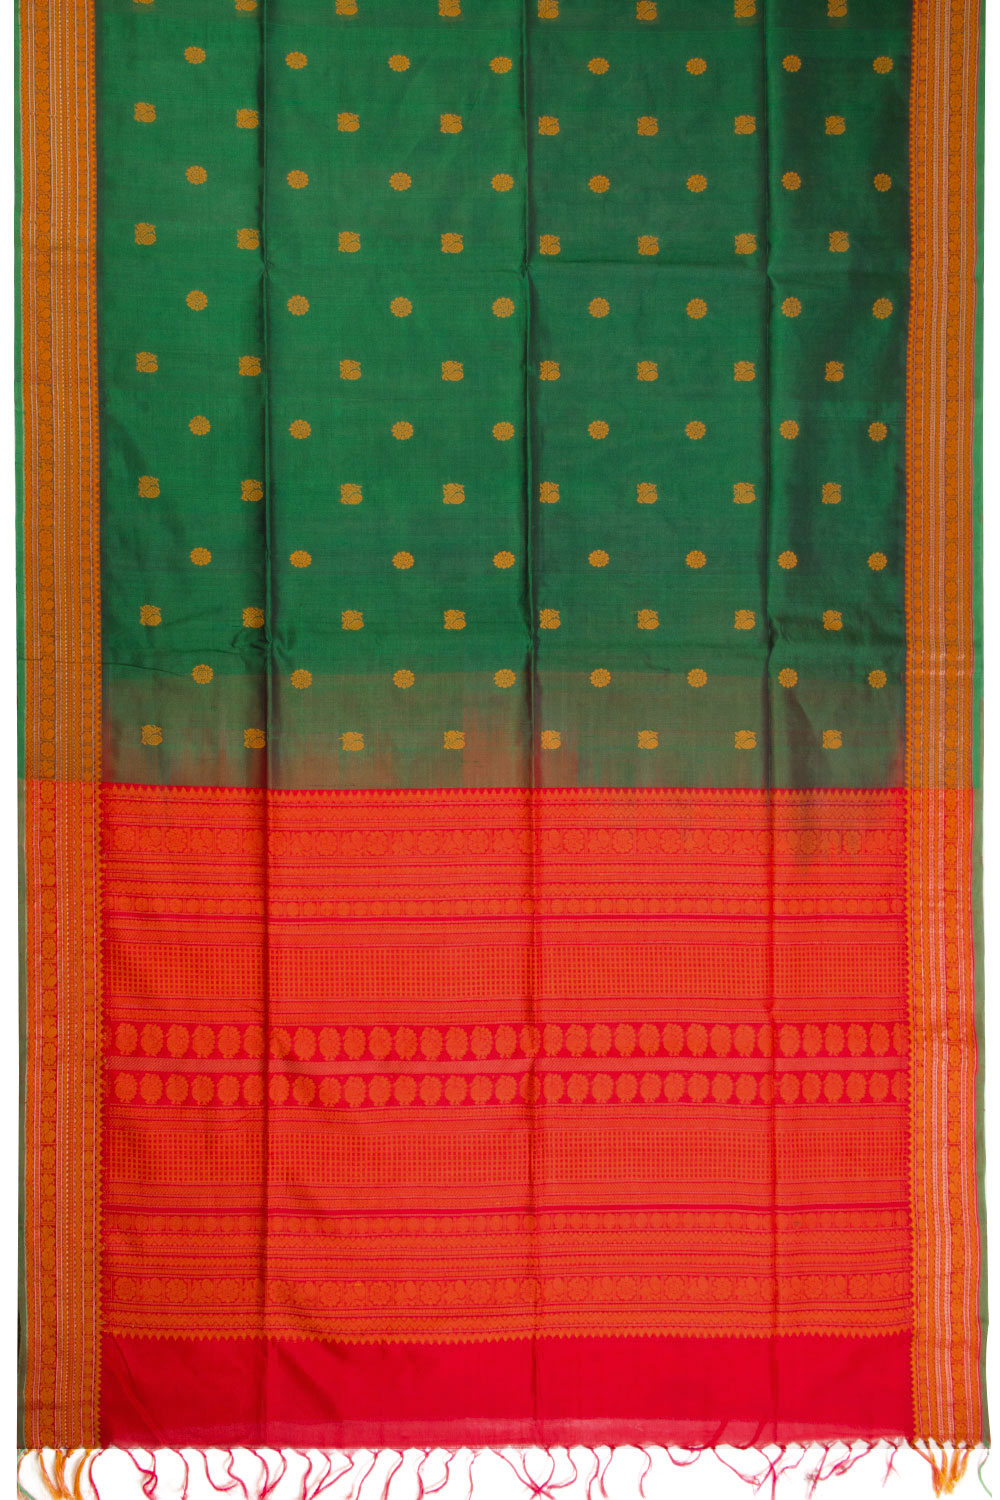 Green Handloom Kanchi Silk Cotton Saree 10069261 - Avishya